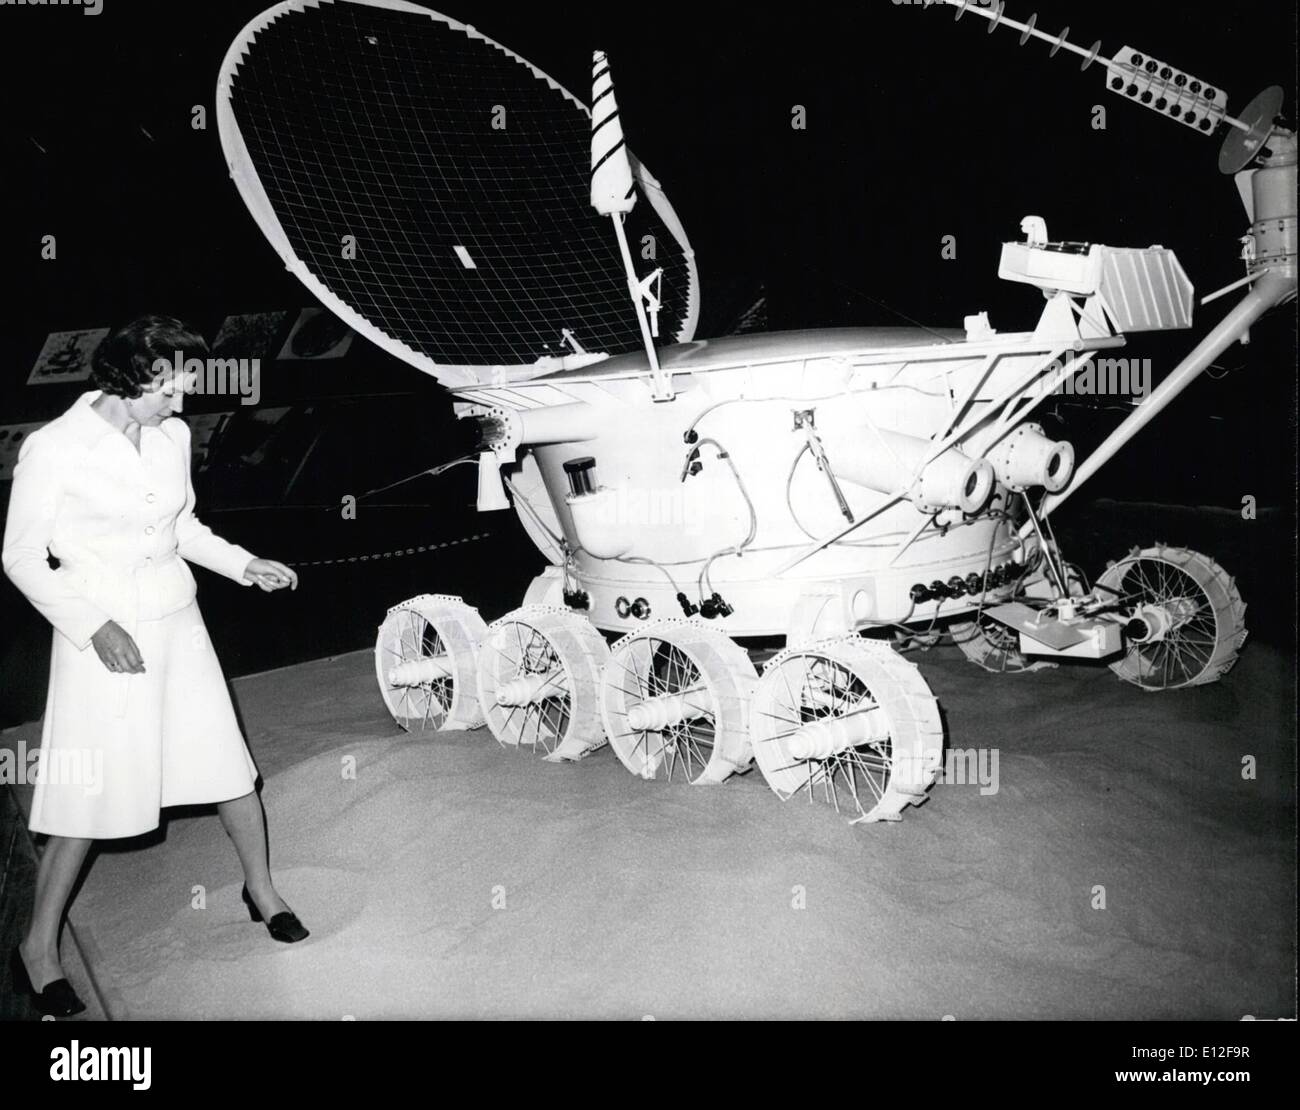 09. Januar 2012 - die sowjetische Kosmonauten Valentina Tereshkova besuchte die Ausstellung "Raum=Forschung und Schutz durch Umweltverschmutzung in USSR", die hier stattfindet. Vor zwölf Jahren kam die charmante, nette Dame 48 mal um die Erde durch ''Wostok 6'', sie war - und ist - die erste Frau im All. In München veröffentlichte Valentine Tereshkova ihren größten Wunsch, sie möchte zum Mars fliegen! Die Kosmonautin ist mit Andrijan Nikolajew, ebenfalls sowjetischer Kosmonaut (Wostok 9), verheiratet und hat als elf Jahre alte Tochter Stockfoto